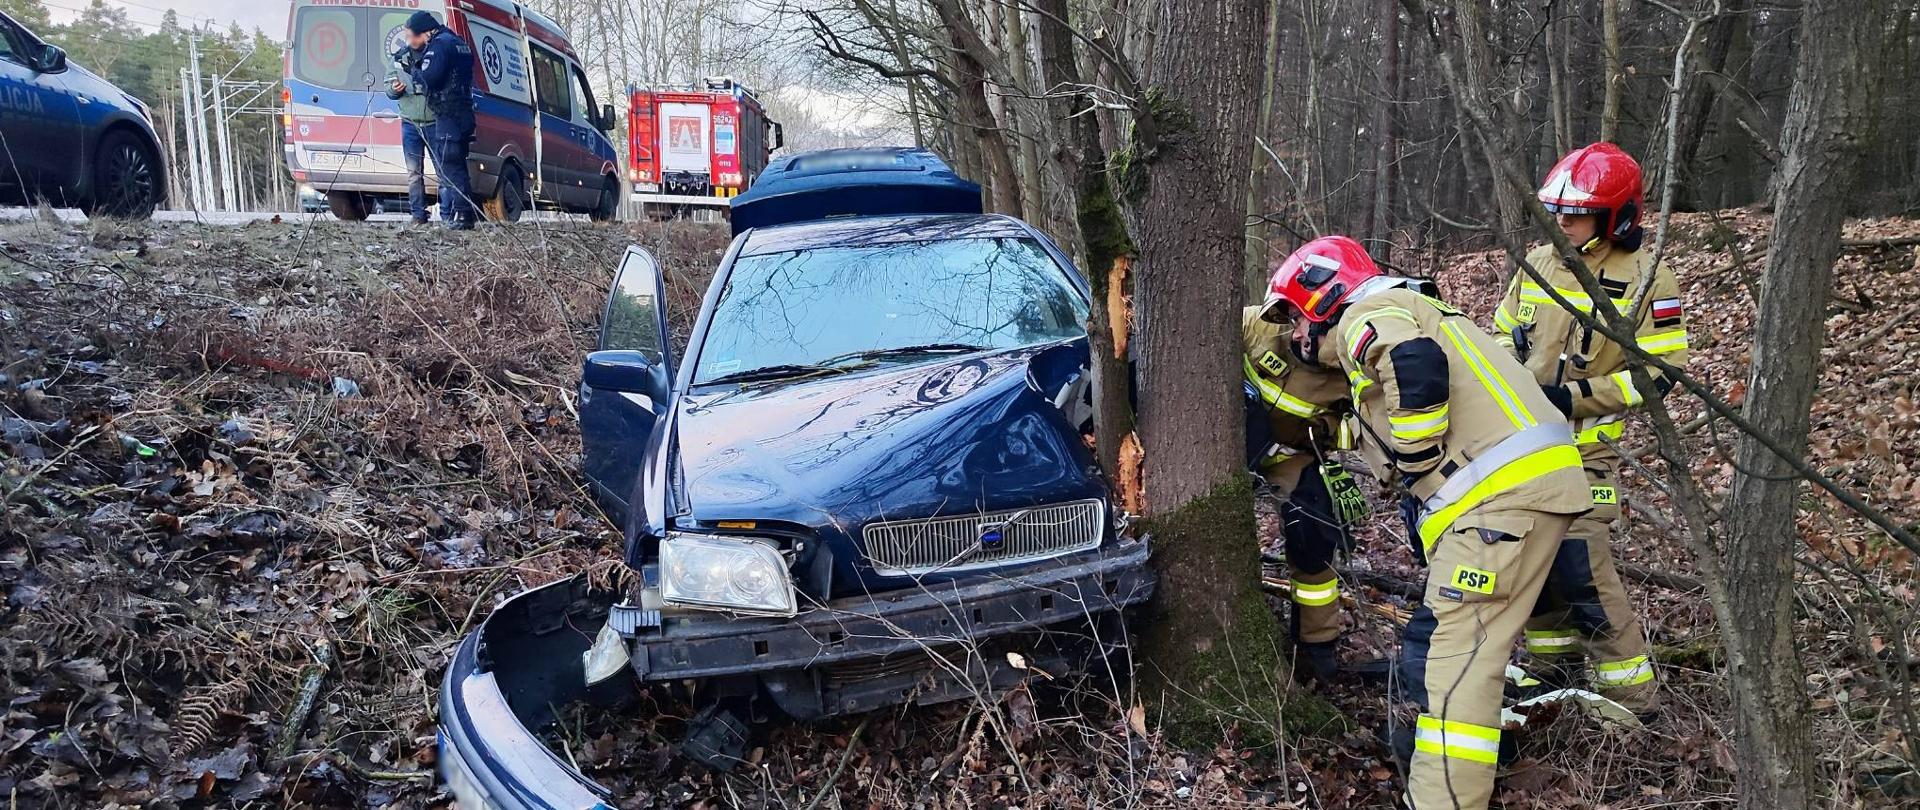 Zdjęcie przedstawia uszkodzony samochód marki Volvo w wyniku uderzenia w drzewo. Samochód stoi na ziemi pokrytej liśćmi, przy drzewie. Po prawej stronie widać 3 strażaków w trakcie działań. Po lewej stronie w tle widać karetkę pogotowia wraz z samochodem pożarniczym oraz funkcjonariusza Policji podczas czynności.